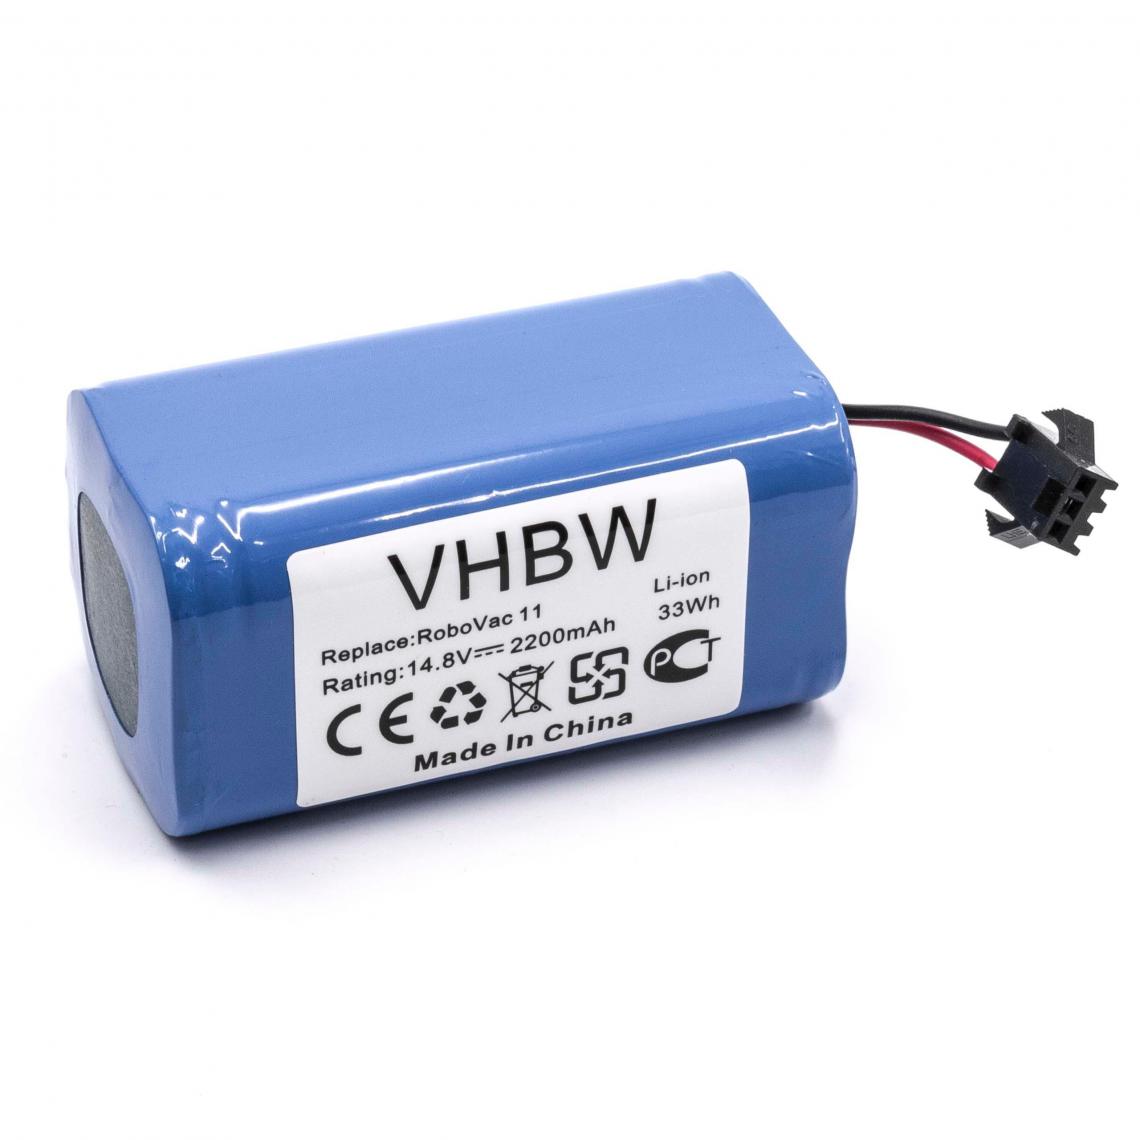 Vhbw - vhbw Batterie compatible avec Ecovacs Deebot CEN546 aspirateur, robot électroménager (2200mAh, 14,8V, Li-ion) - Accessoire entretien des sols